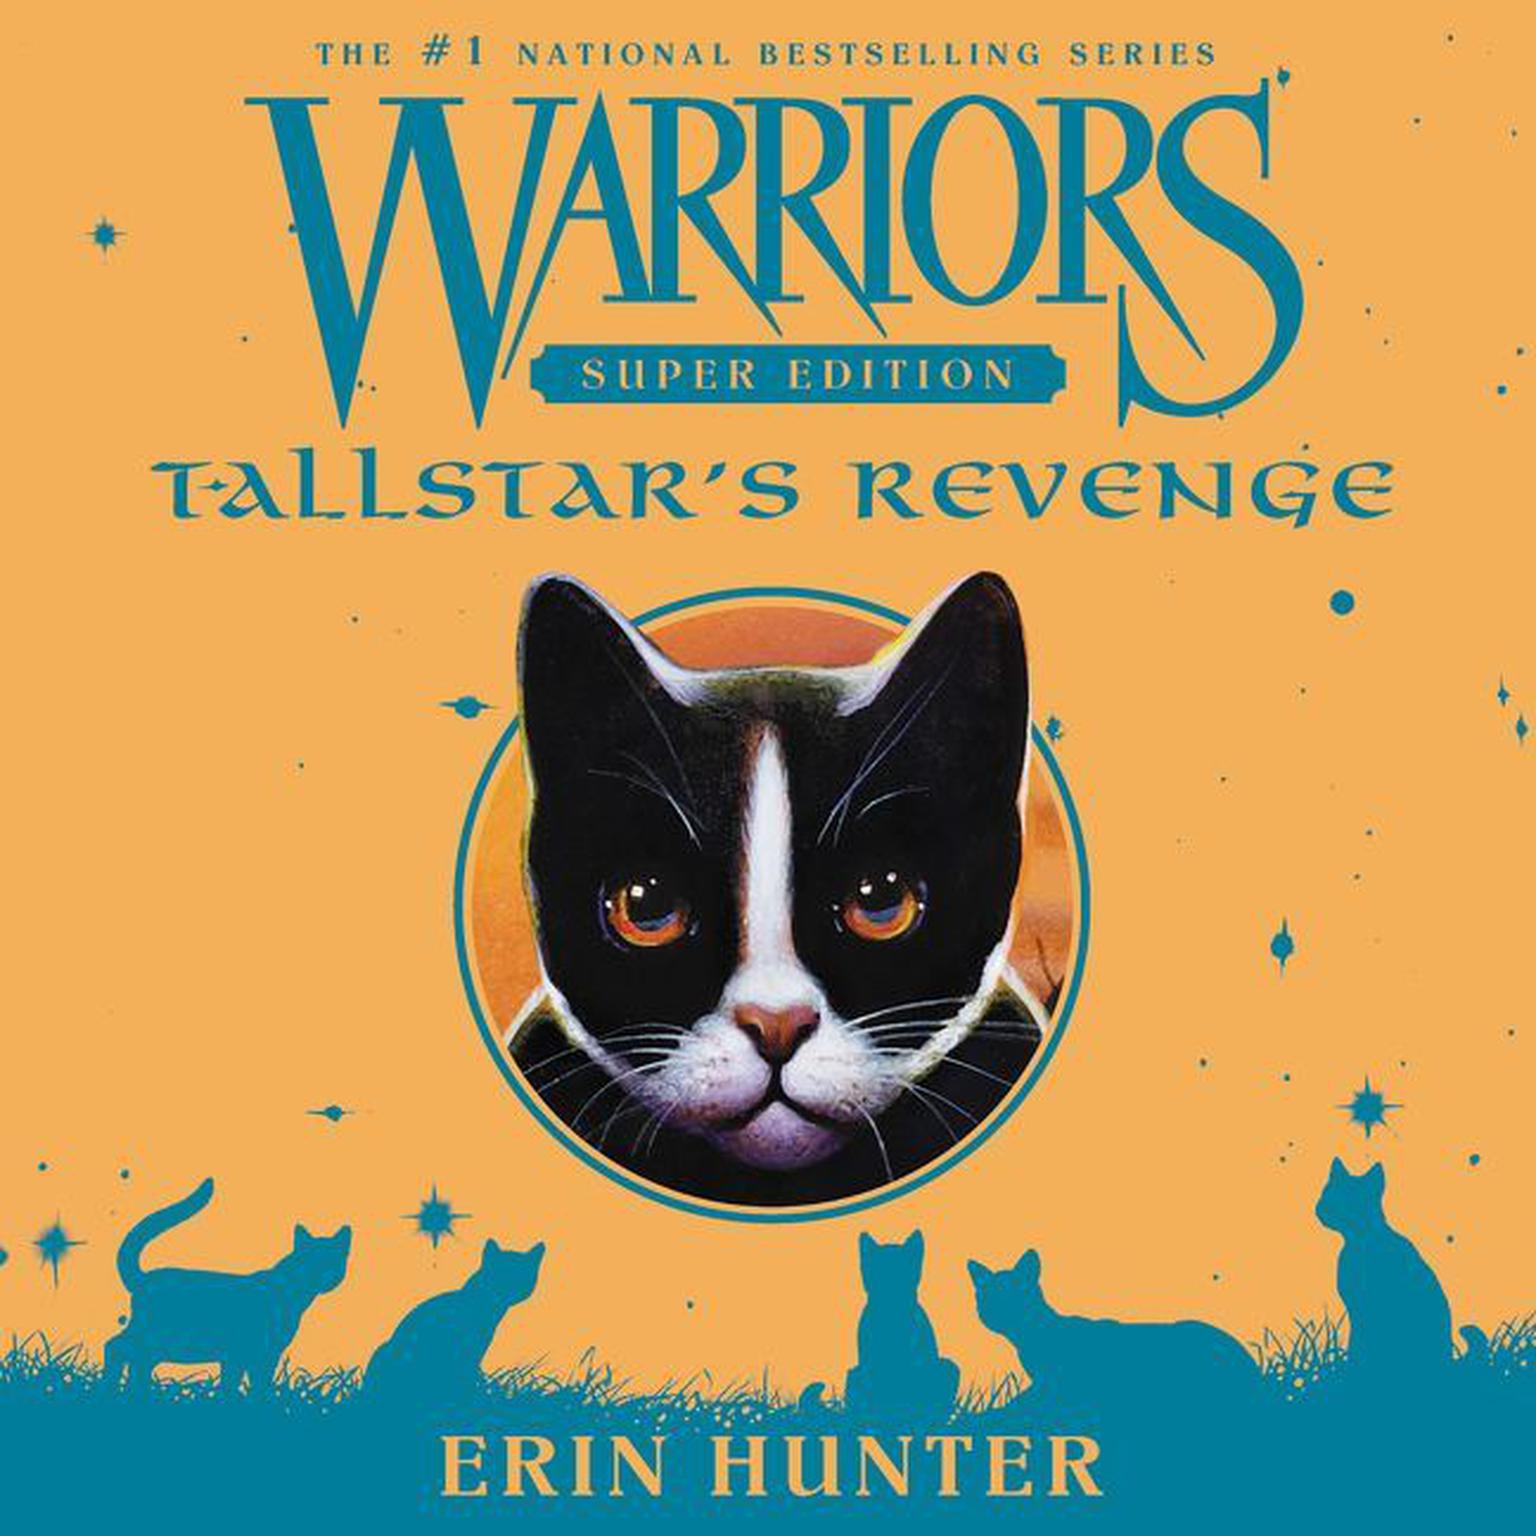 Warriors Super Edition: Tallstars Revenge: Tallstar’s Revenge Audiobook, by Erin Hunter